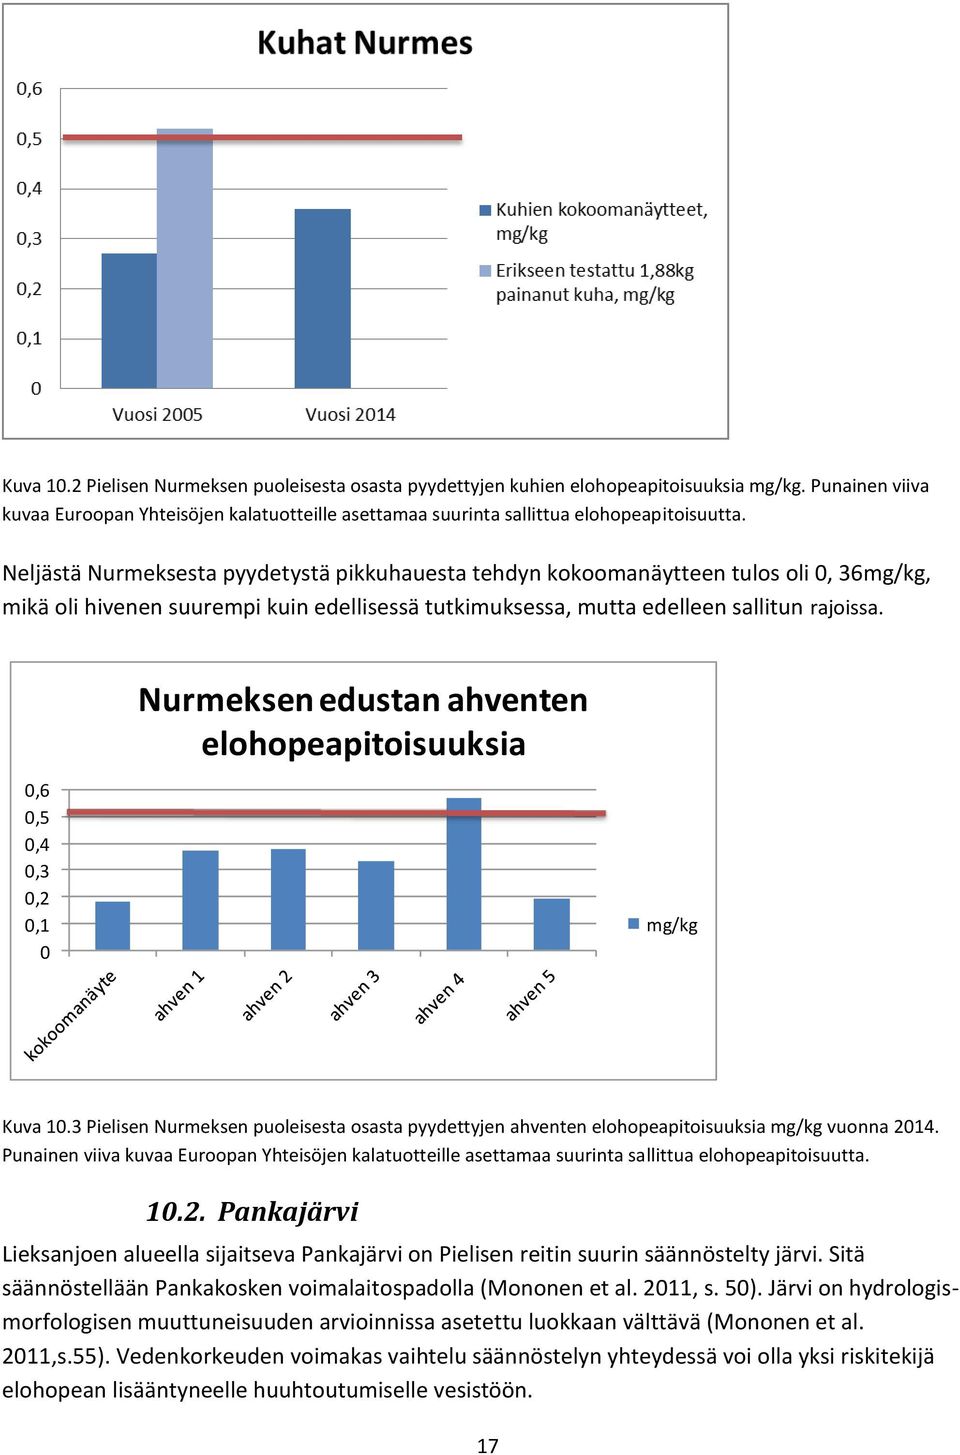 0,6 0,5 0,4 0,3 0,2 0,1 0 Nurmeksen edustan ahventen elohopeapitoisuuksia mg/kg Kuva 10.3 Pielisen Nurmeksen puoleisesta osasta pyydettyjen ahventen elohopeapitoisuuksia mg/kg vuonna 2014.